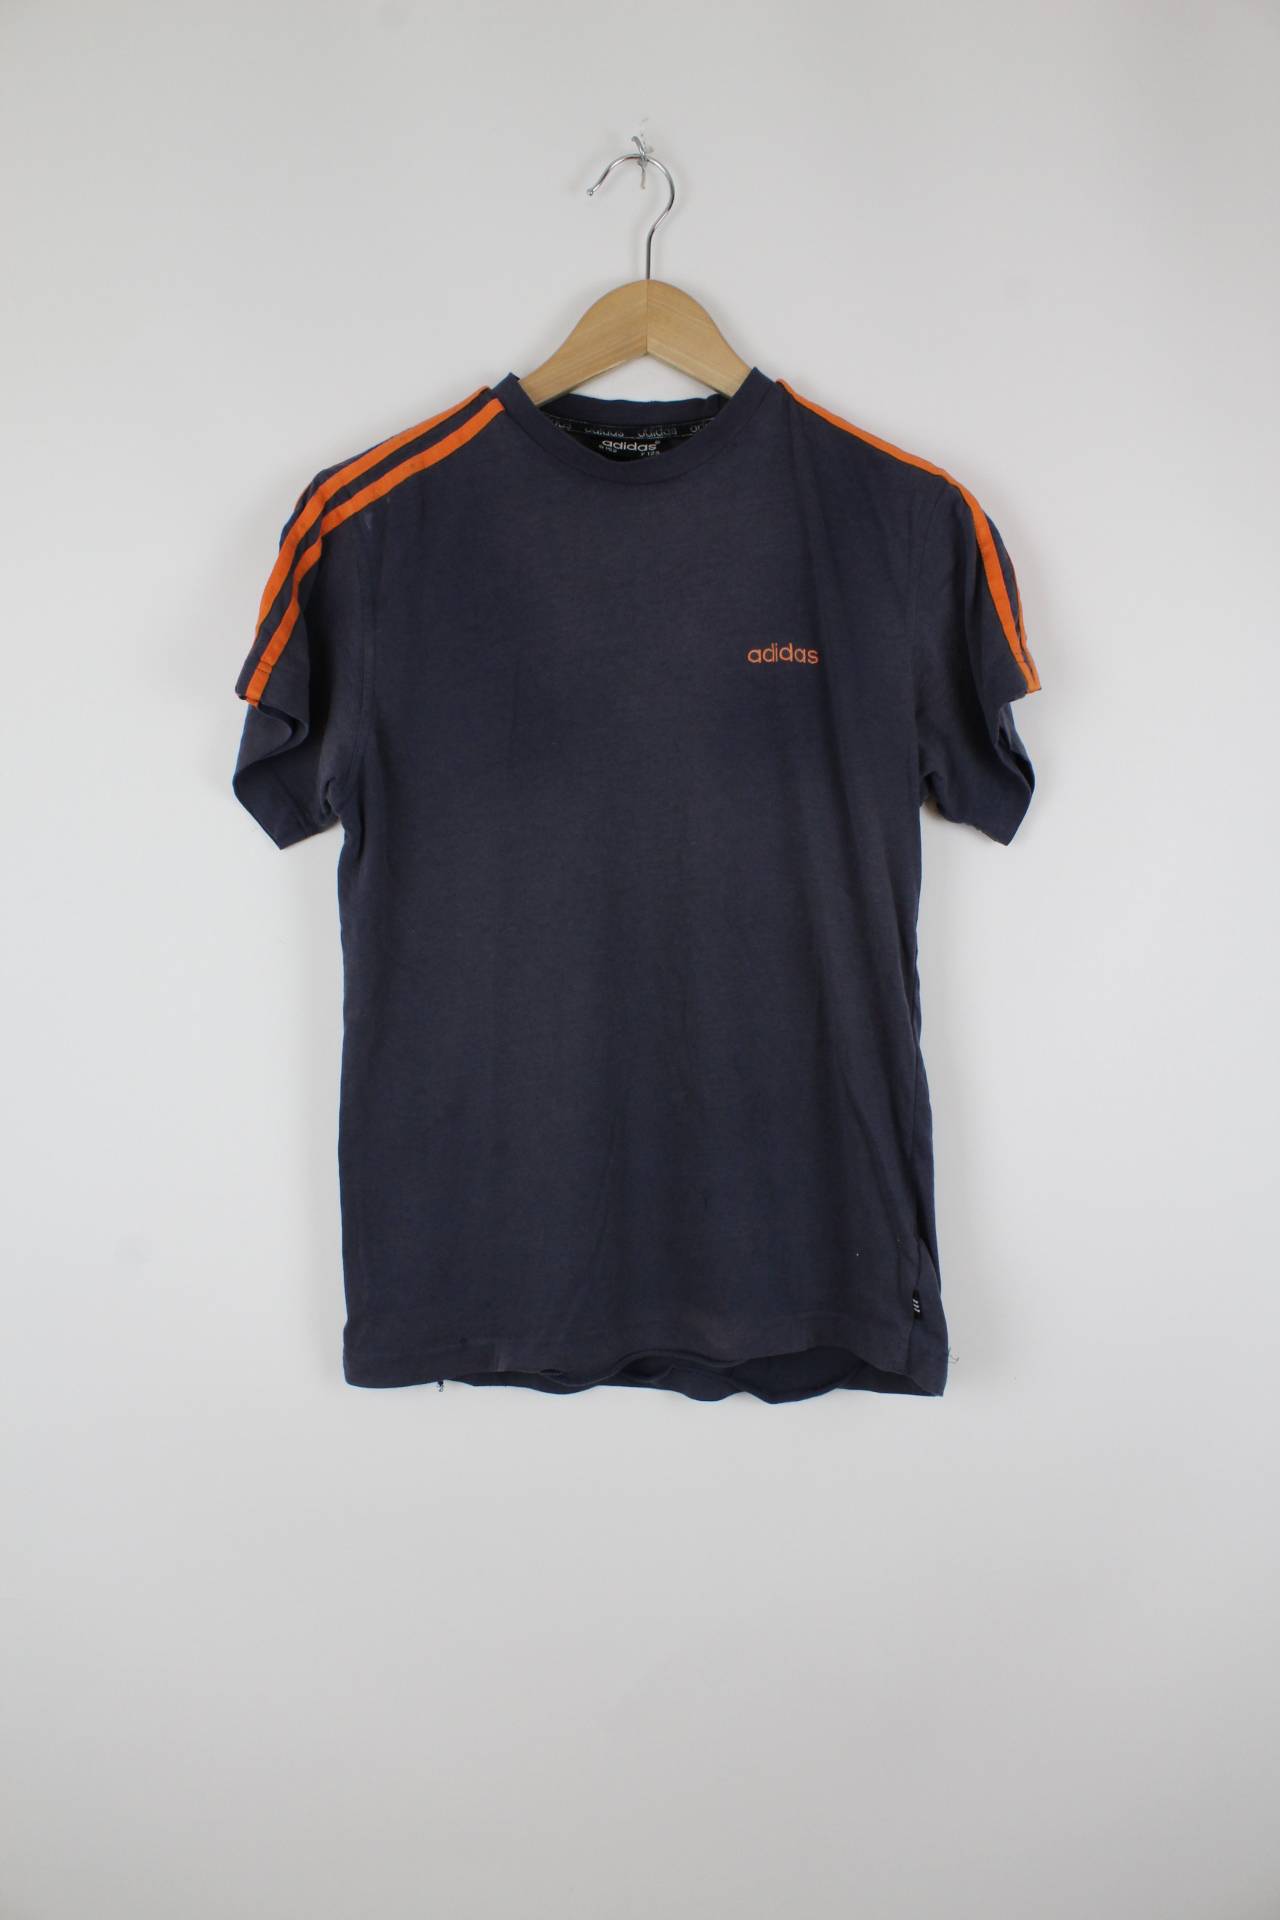 Vintage Adidas T-Shirt Grau - XS